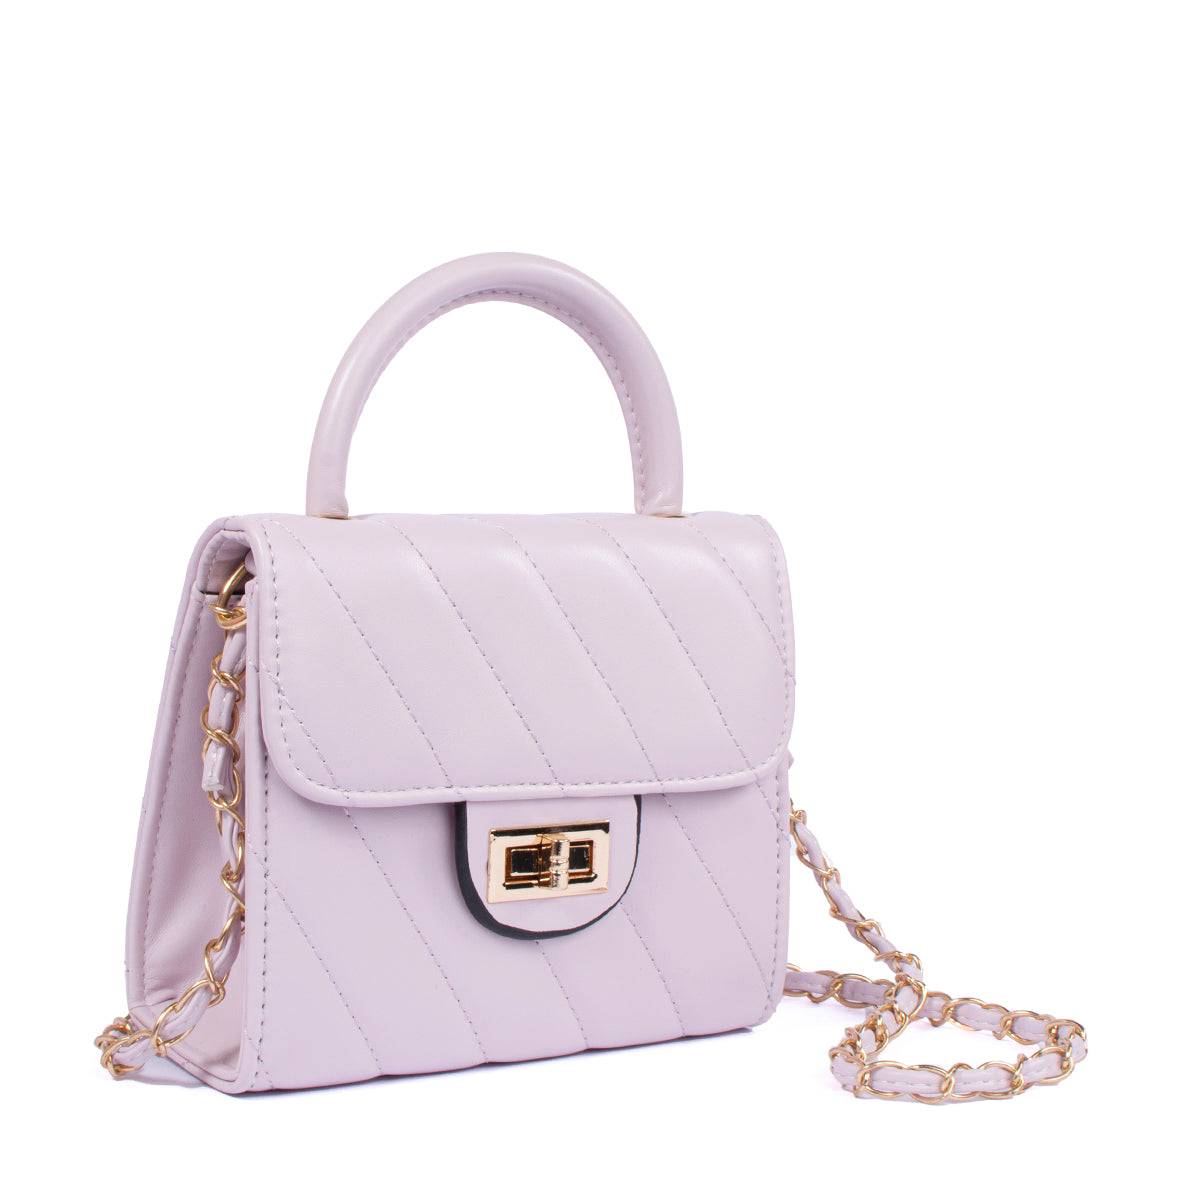 Bolso tipo cartera color lila con costuras en diagonal